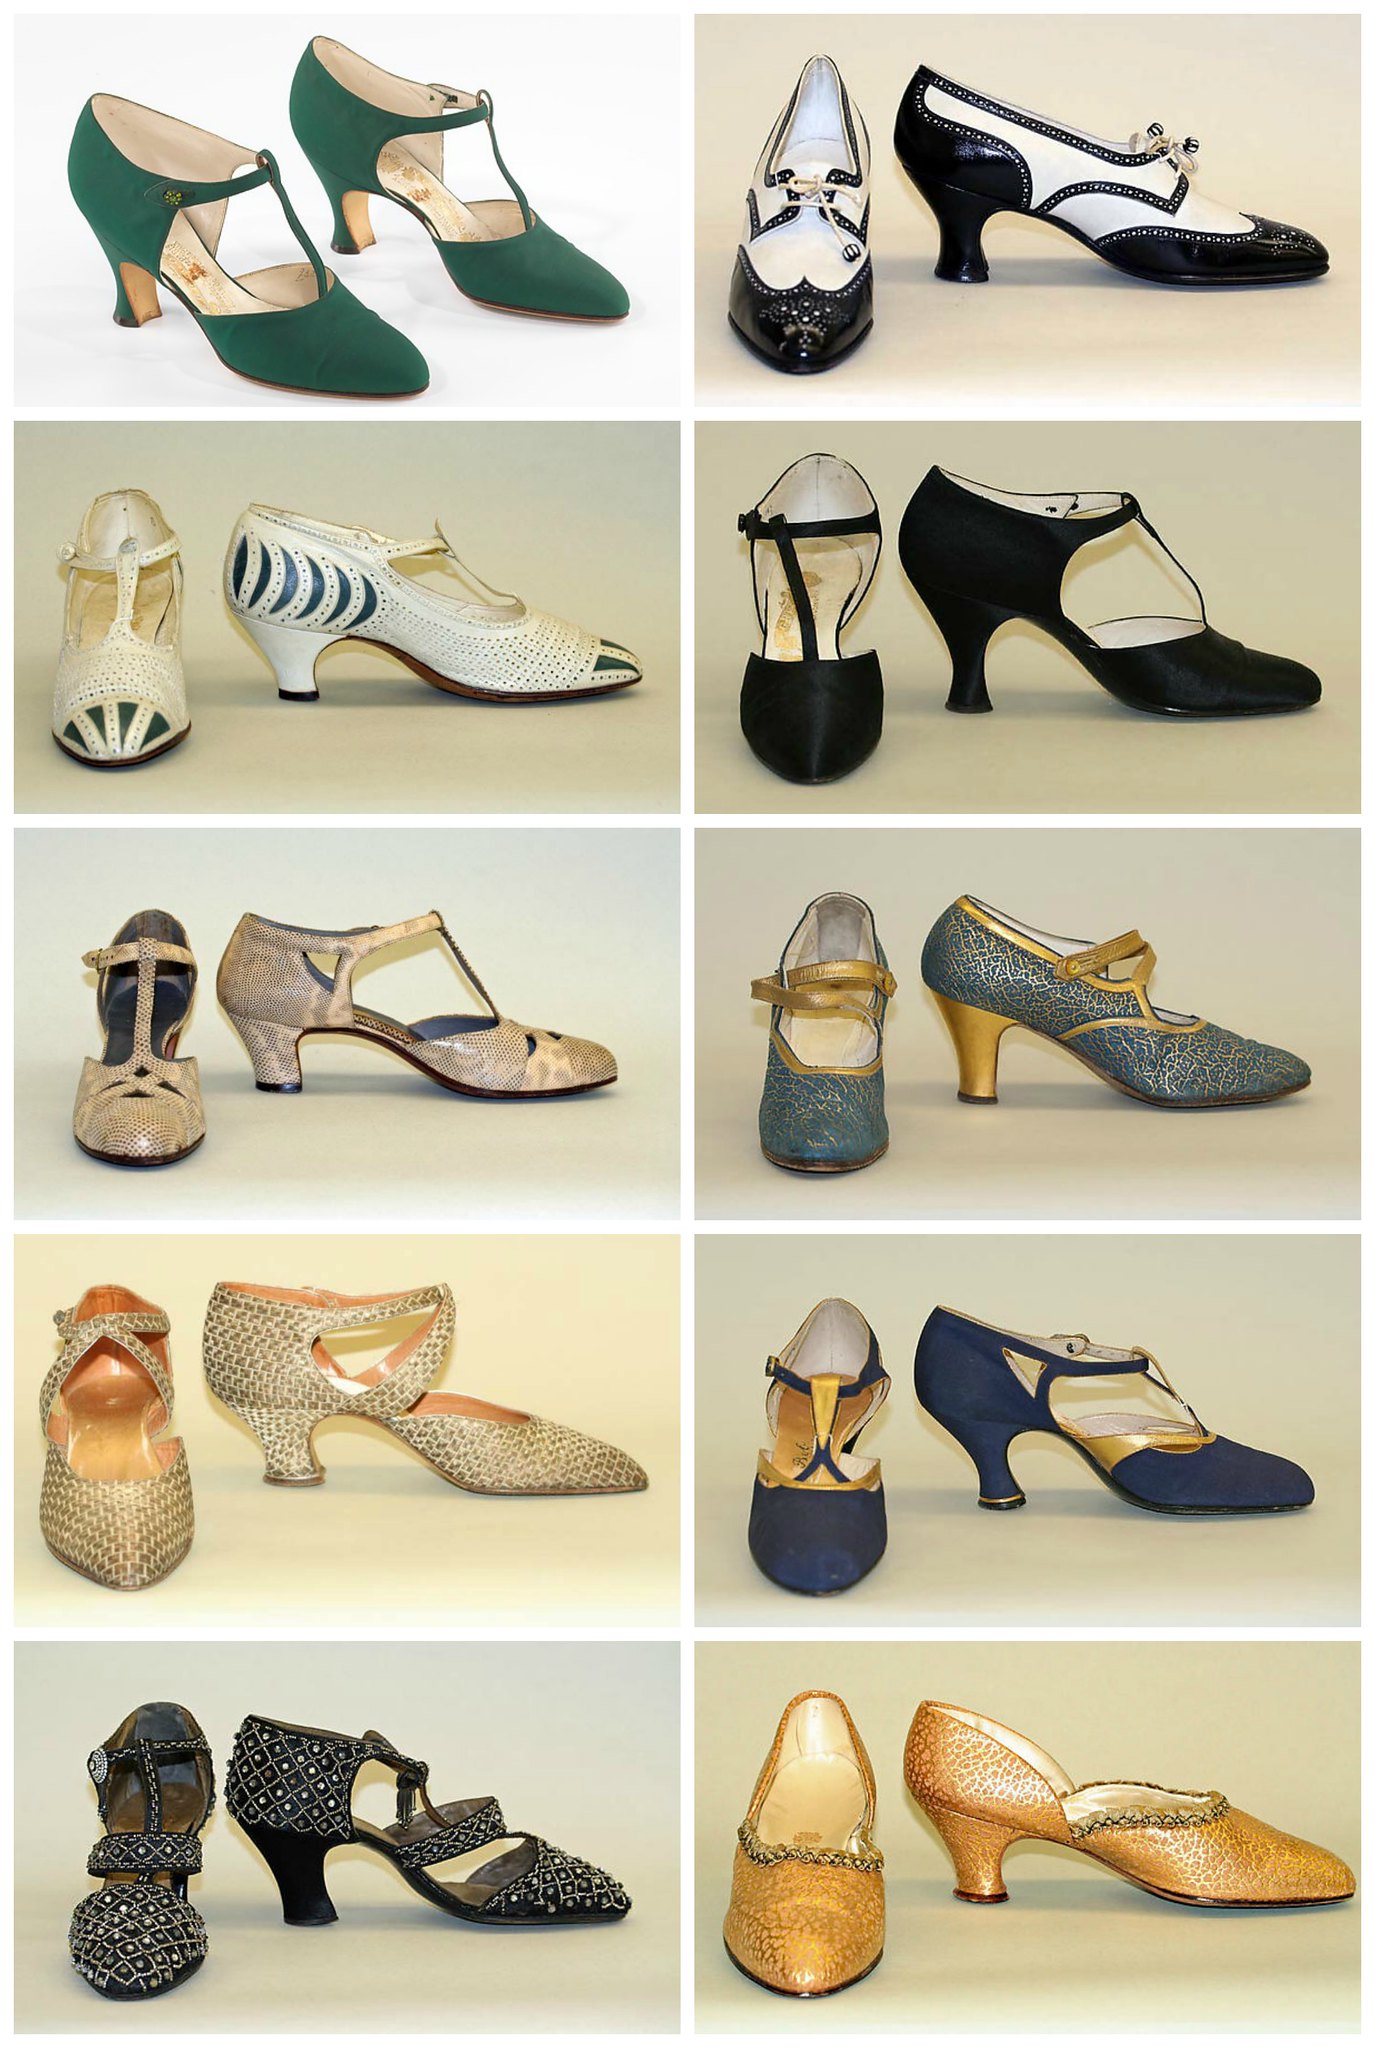 1920s ladies shoes. metmuseum.